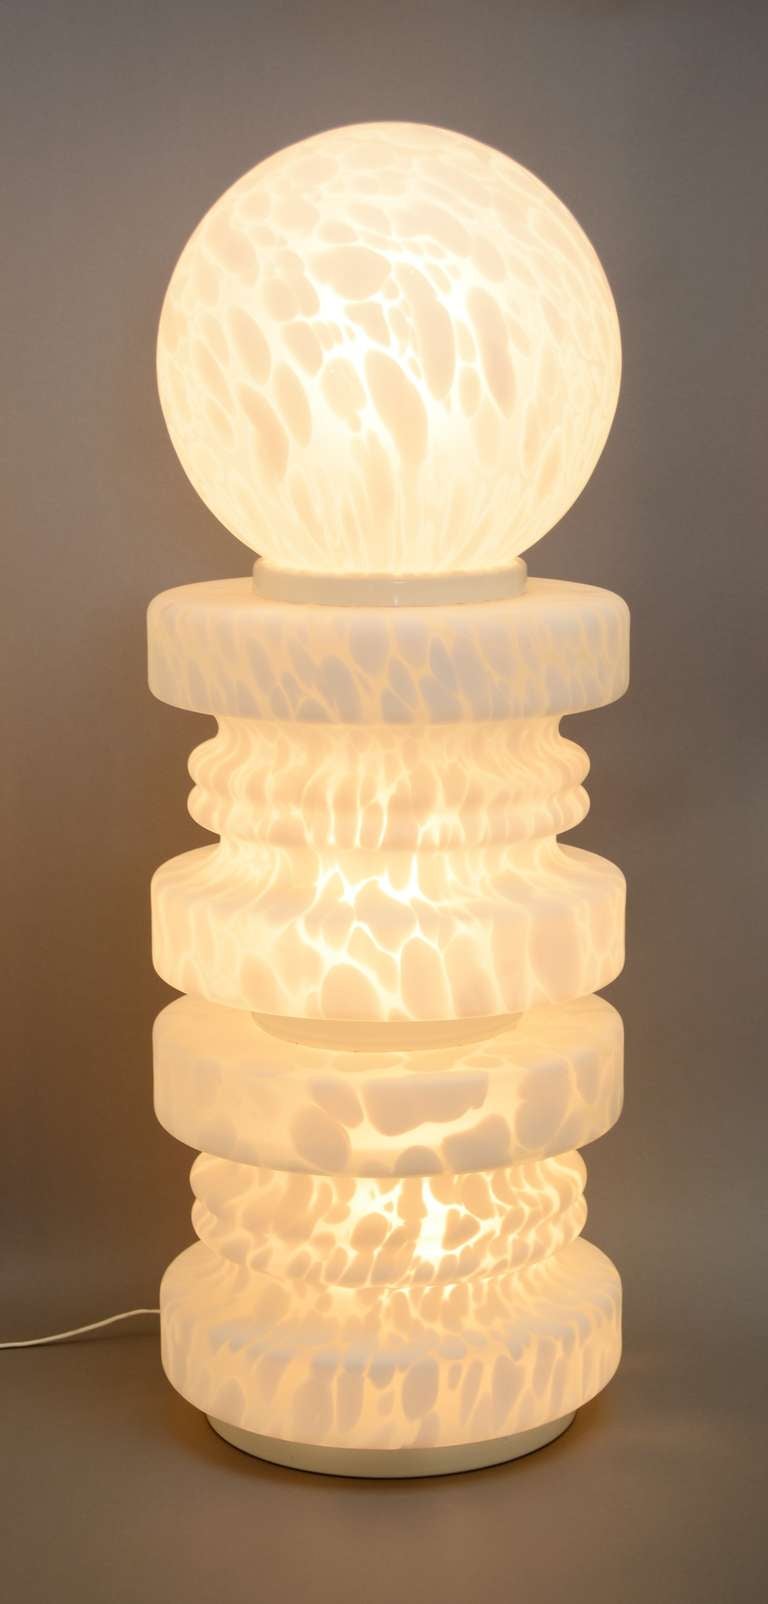 Glass Monumental Chess Piece Murano Lamp